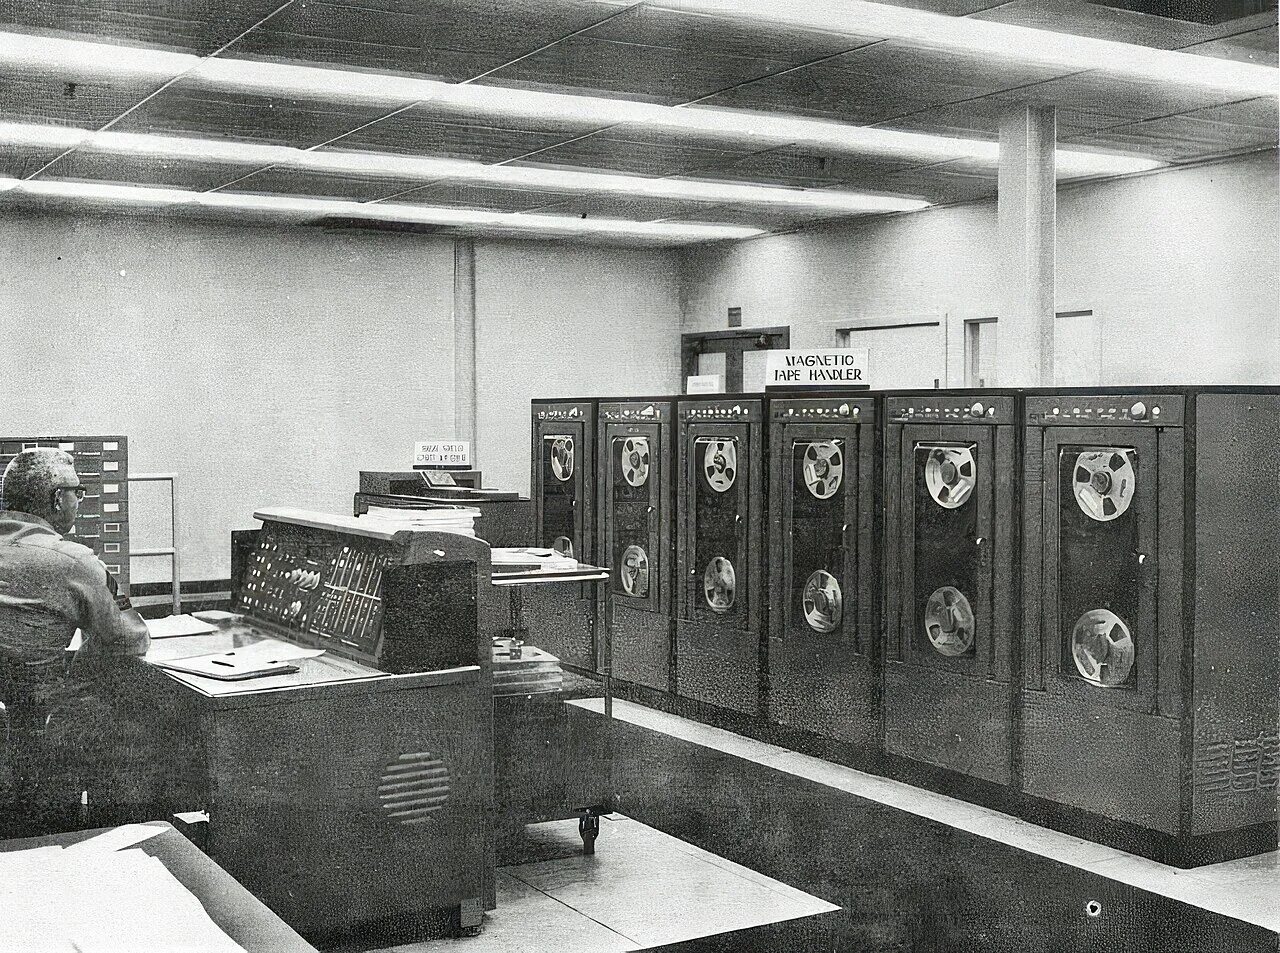 М 40 компьютер. ЭВМ RCA-501. Второе поколение — транзисторы (1955-1965). Tradic ЭВМ. NCR 304 компьютер 2 поколения.